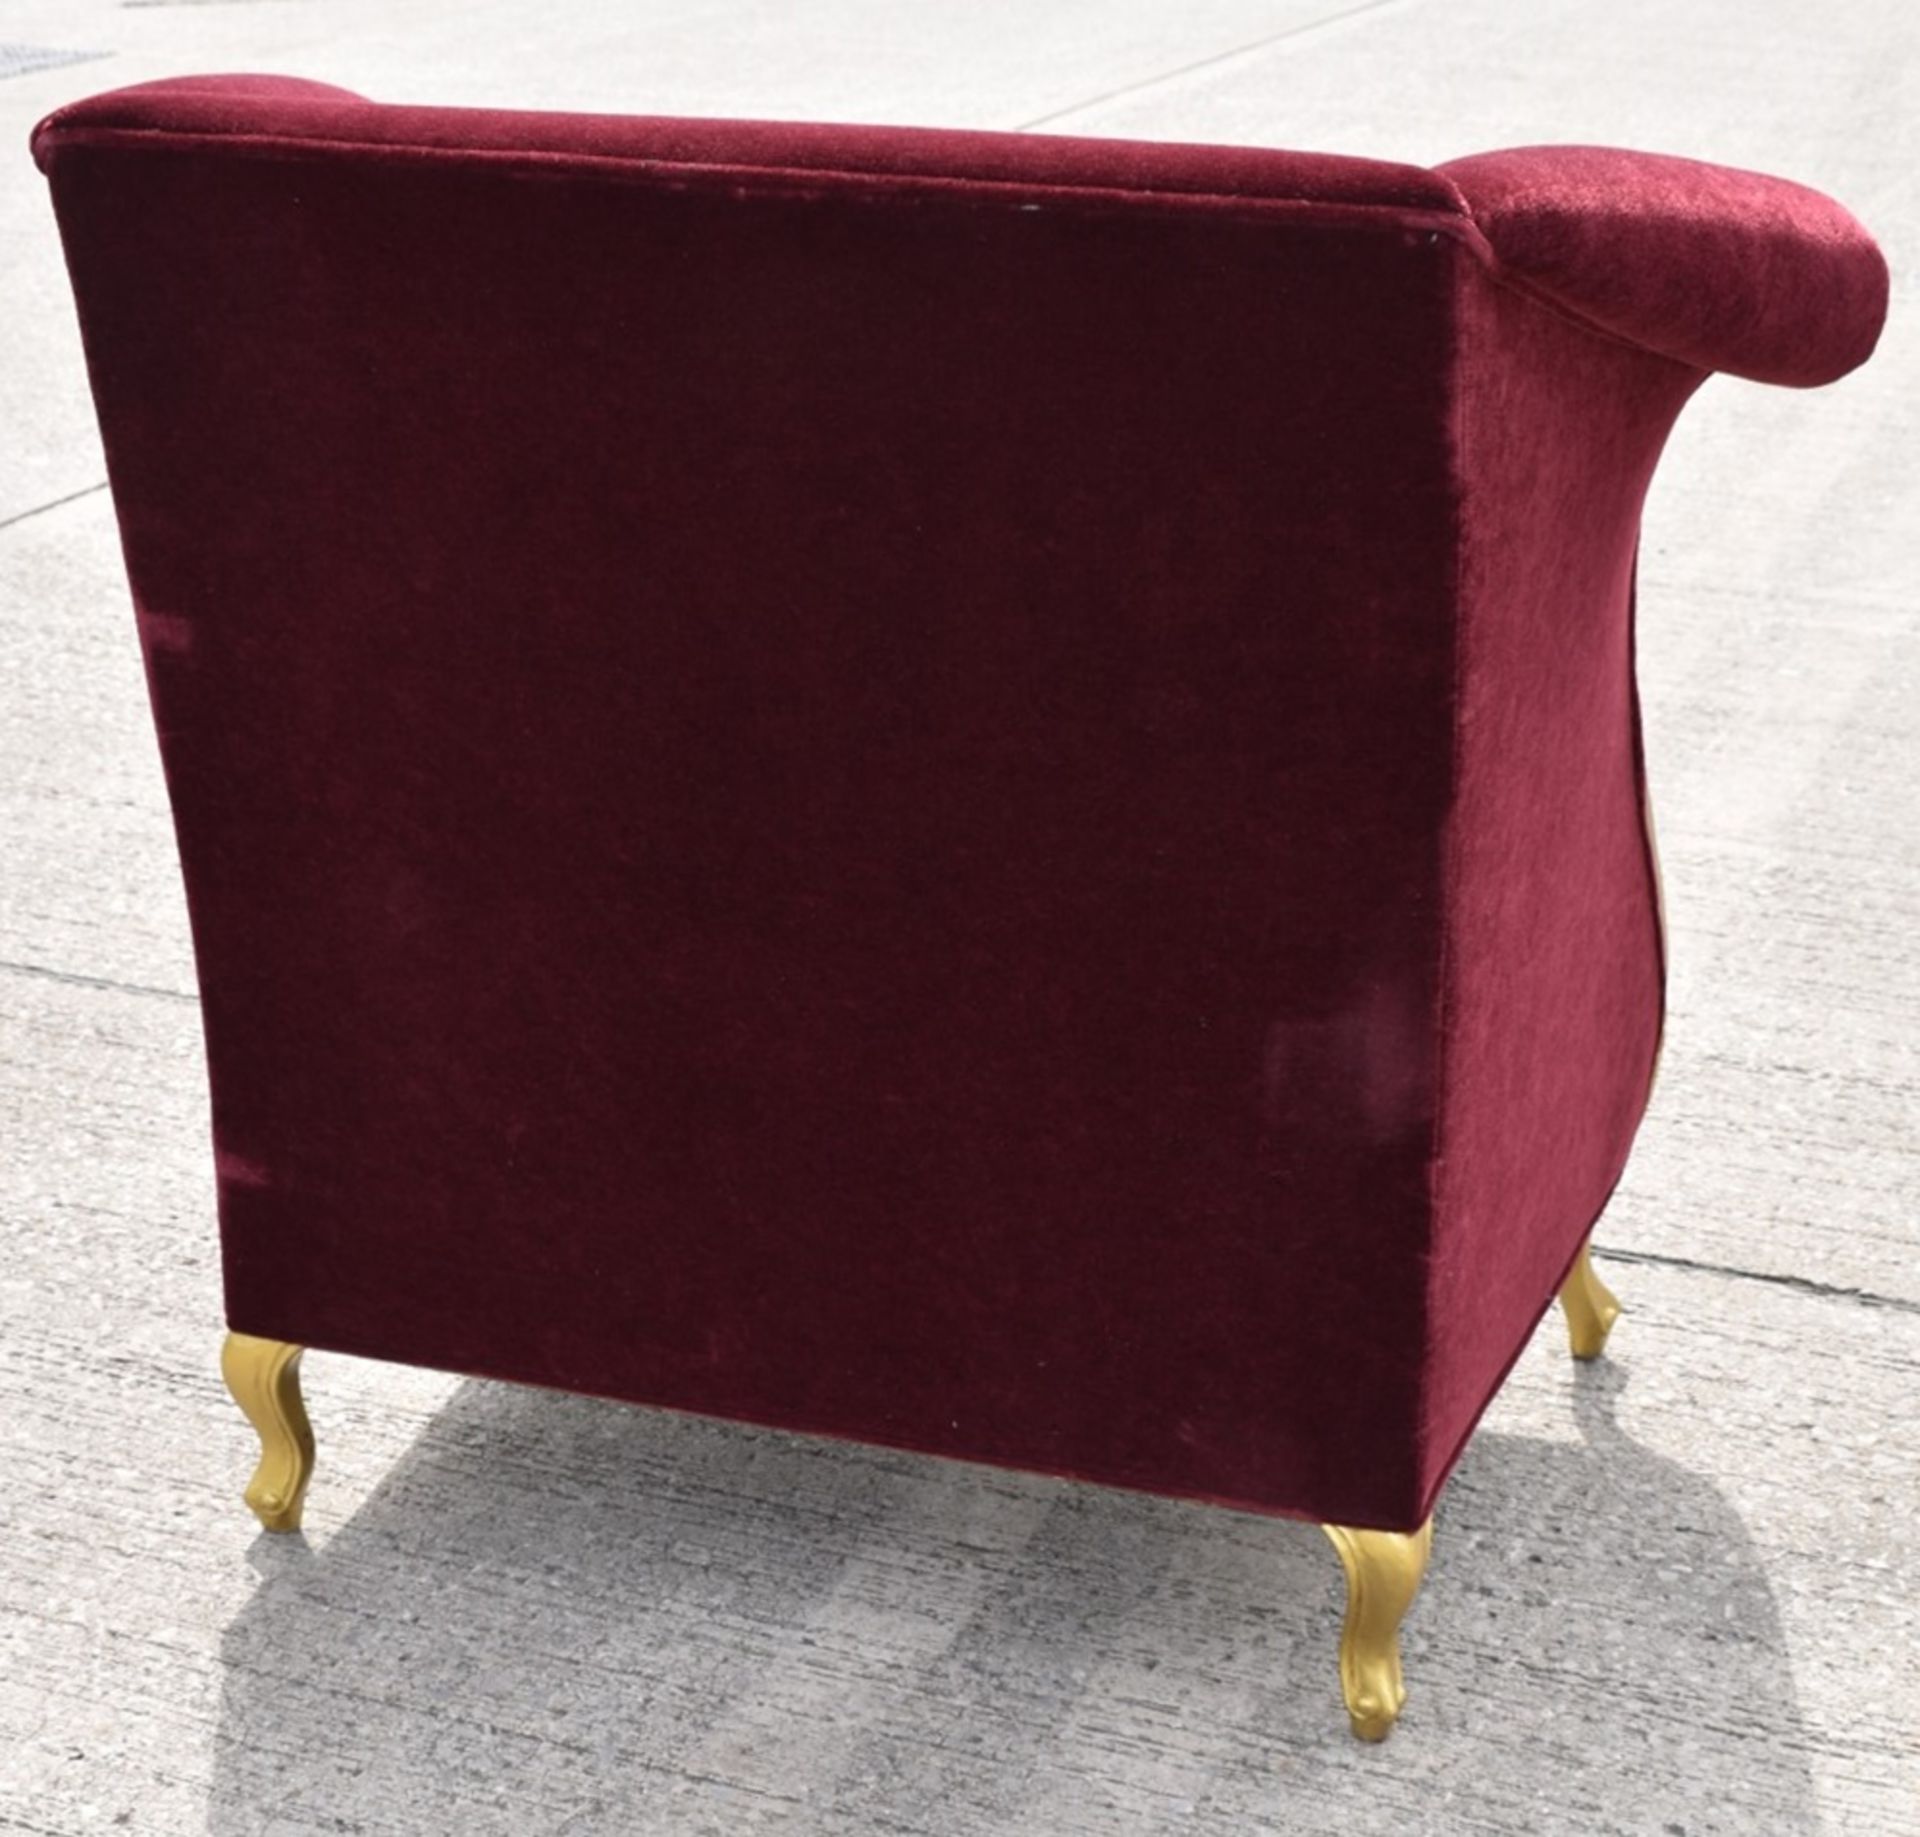 1 x CHRISTOPHER GUY Bespoke Opulent Velvet Upholstered Oversized Armchair - Original Price £4,000 - Image 5 of 10